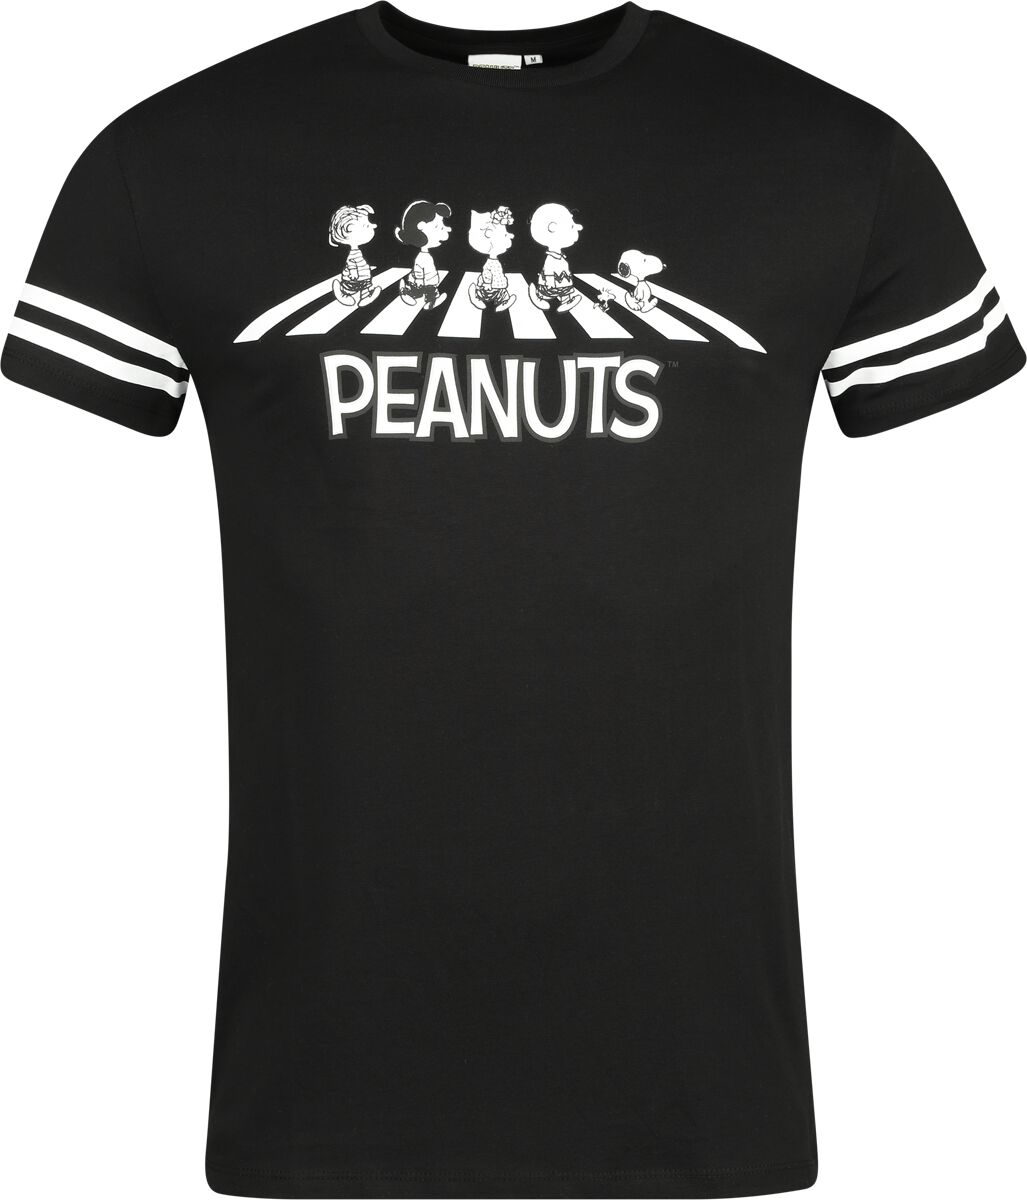 Peanuts T-Shirt - Walking Group - S bis 3XL - für Männer - Größe M - multicolor  - EMP exklusives Merchandise! von Peanuts